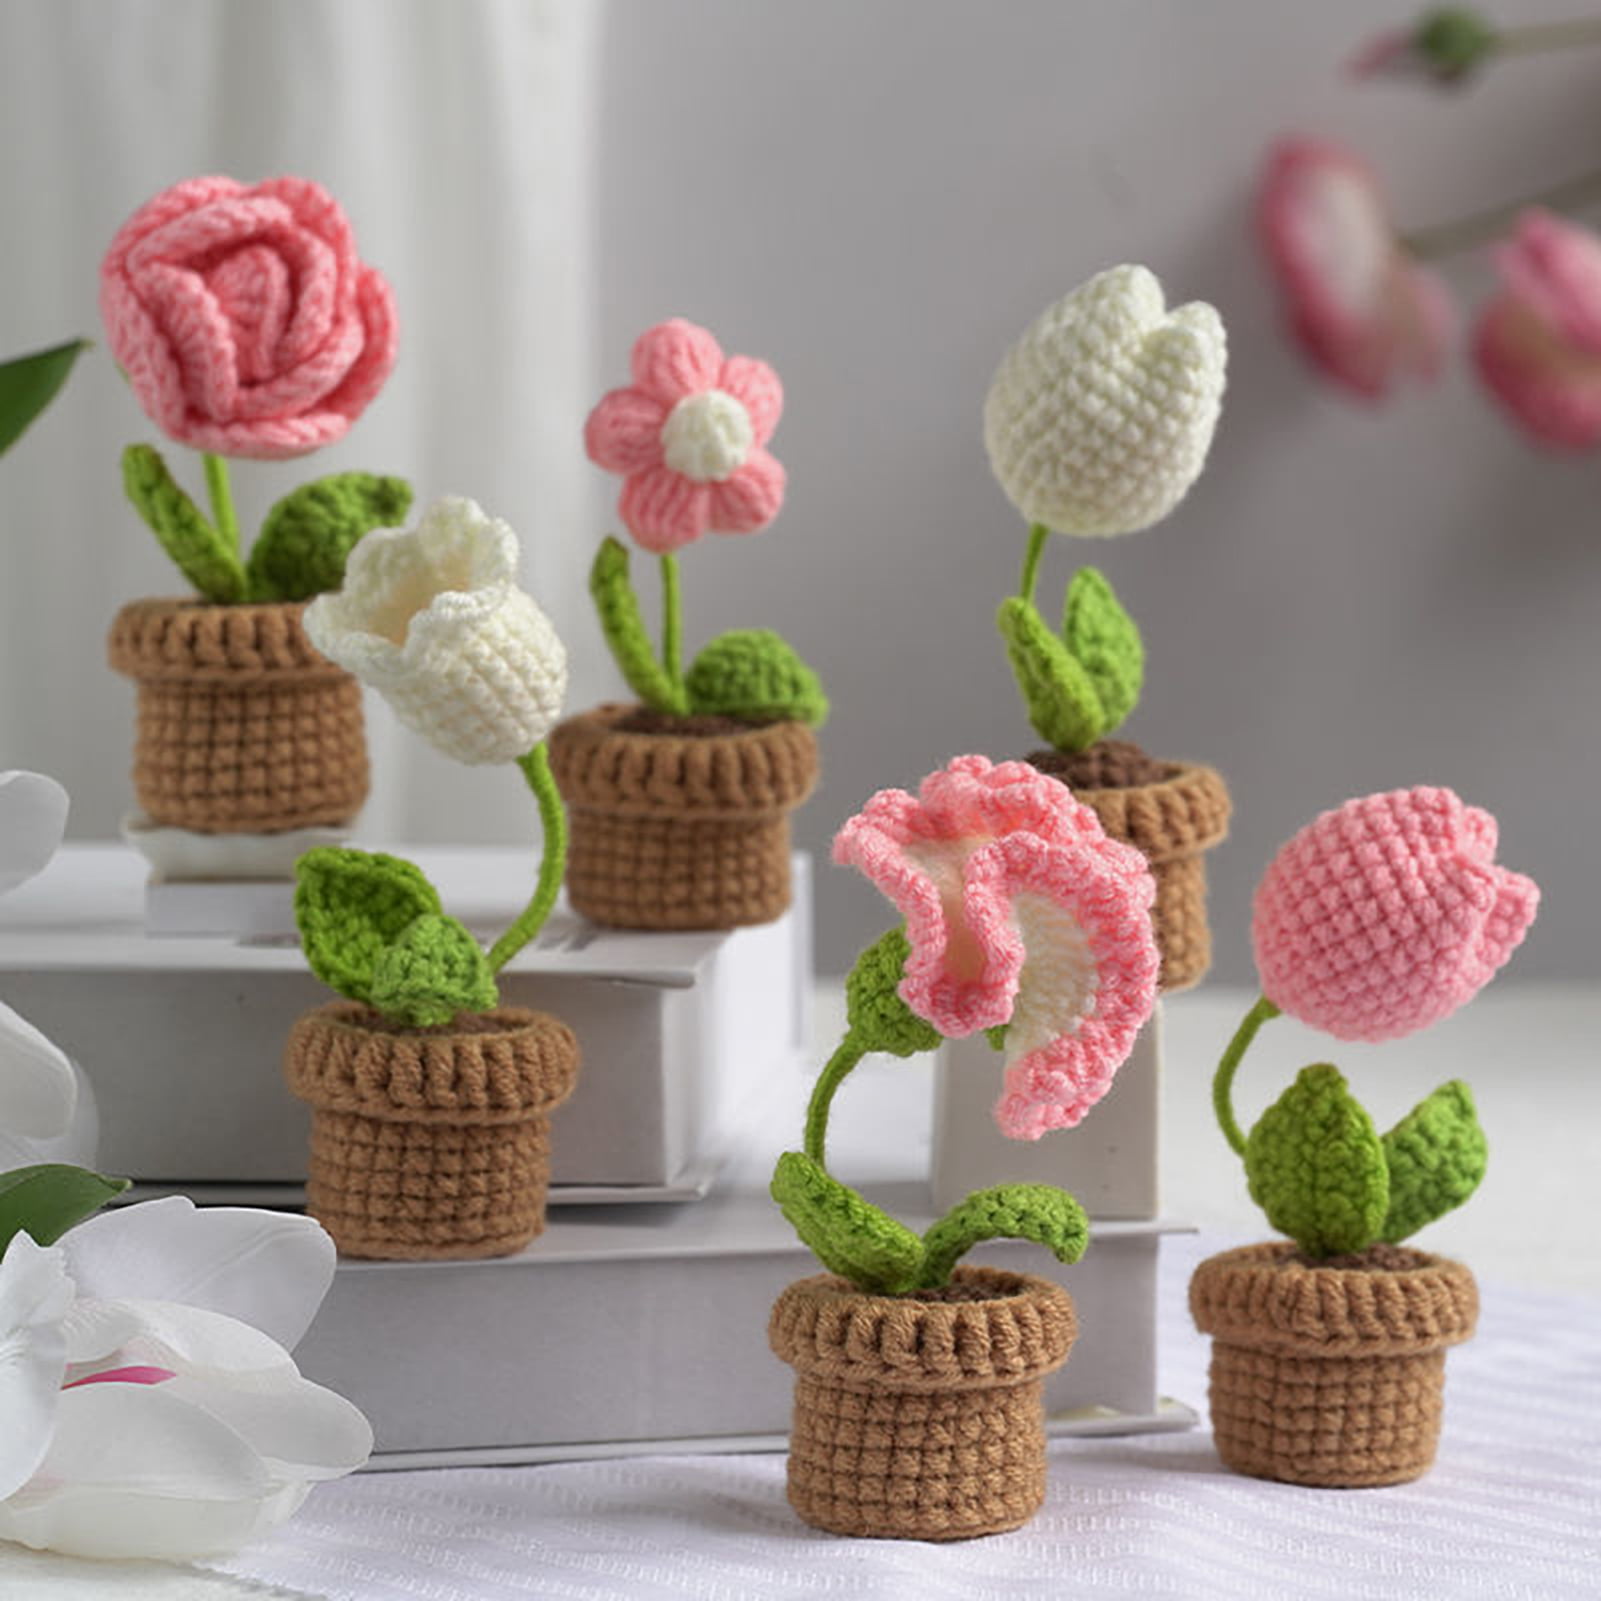 Iuuidu Crochet Kit for Beginners,Flower Crochet Kit, Crochet